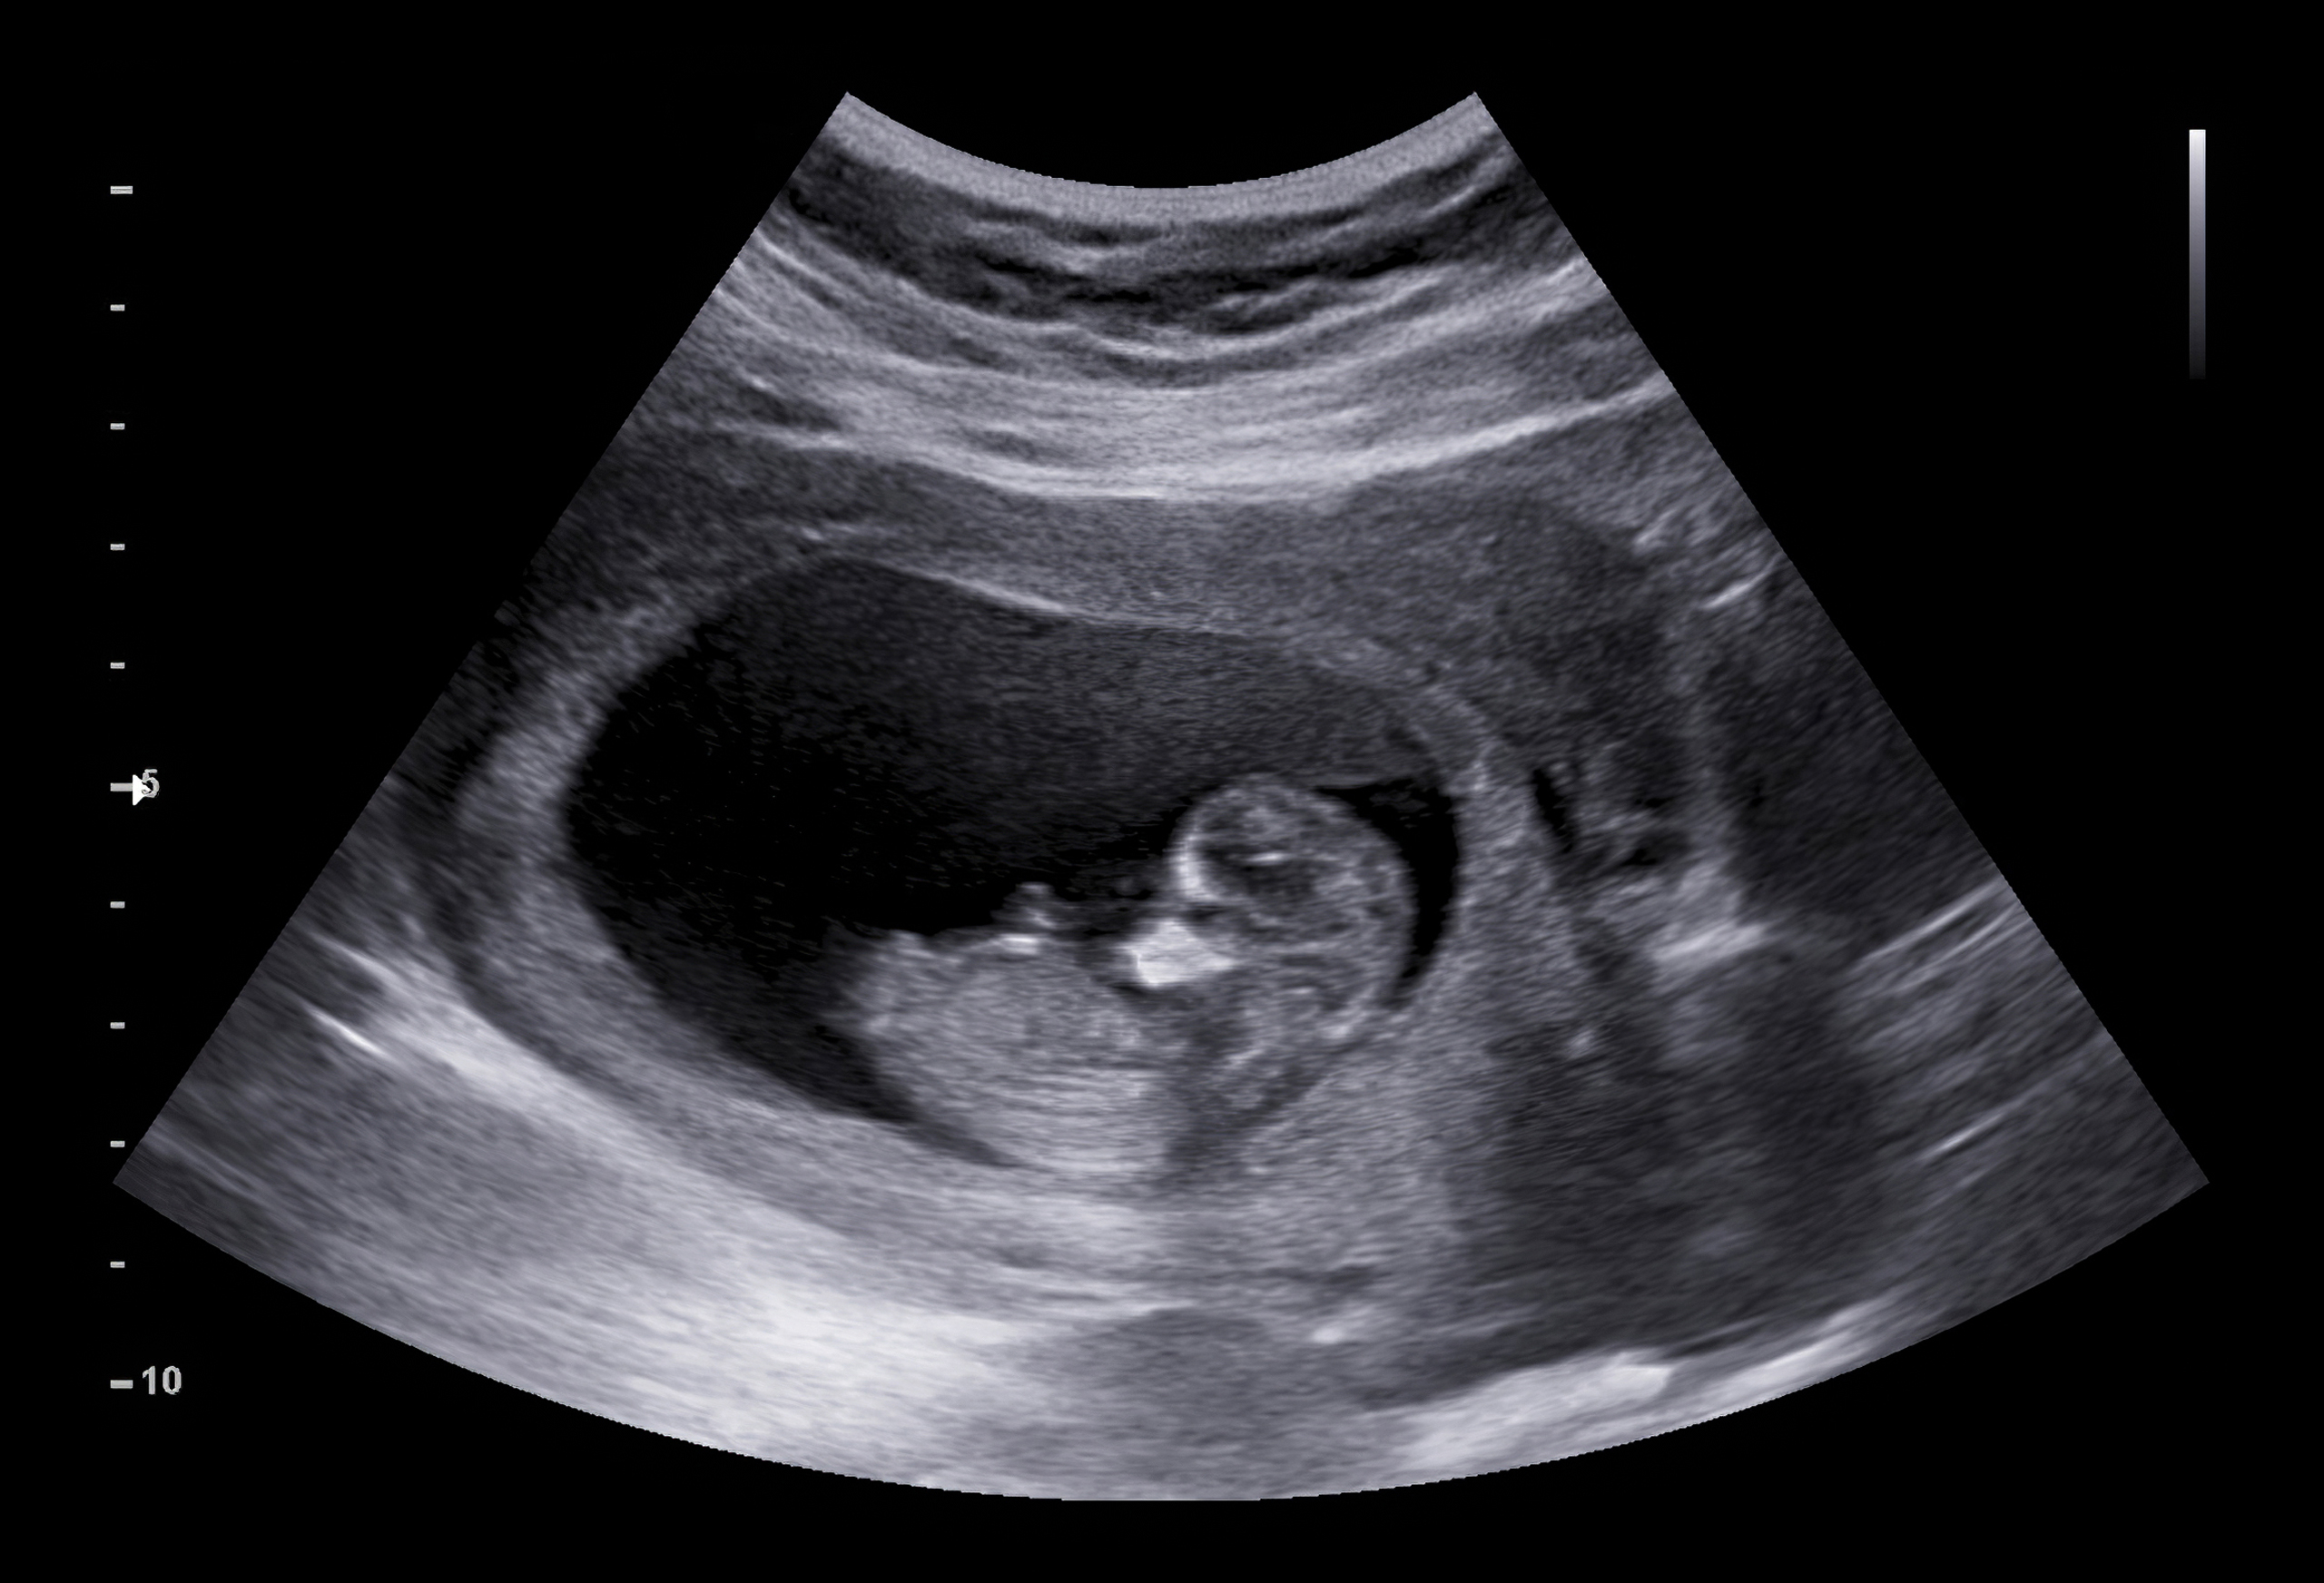 An Ultrasound | Source: Shutterstock